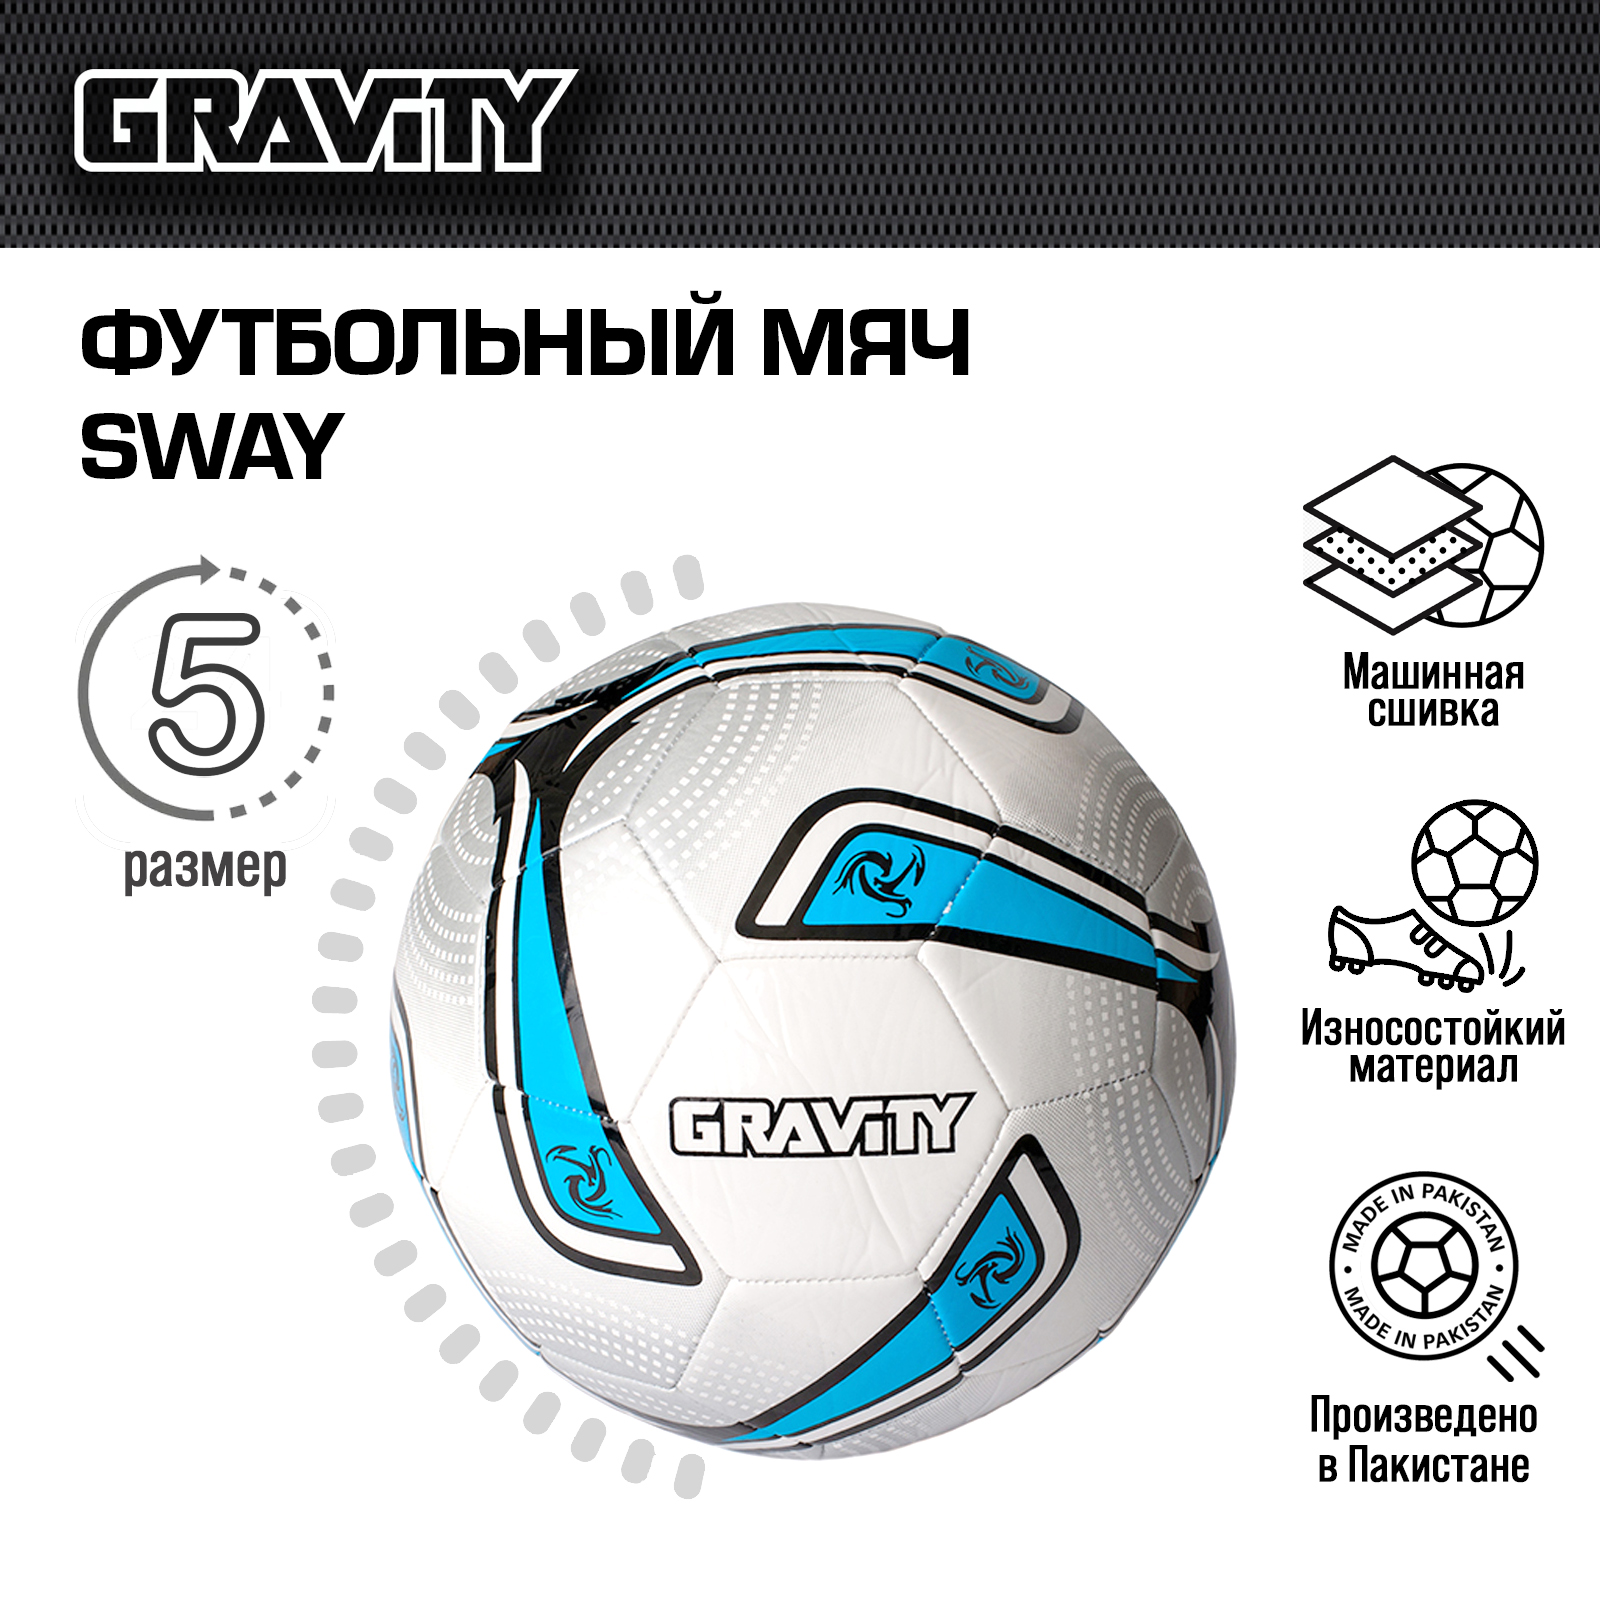 Футбольный мяч Gravity, машинная сшивка, SWAY